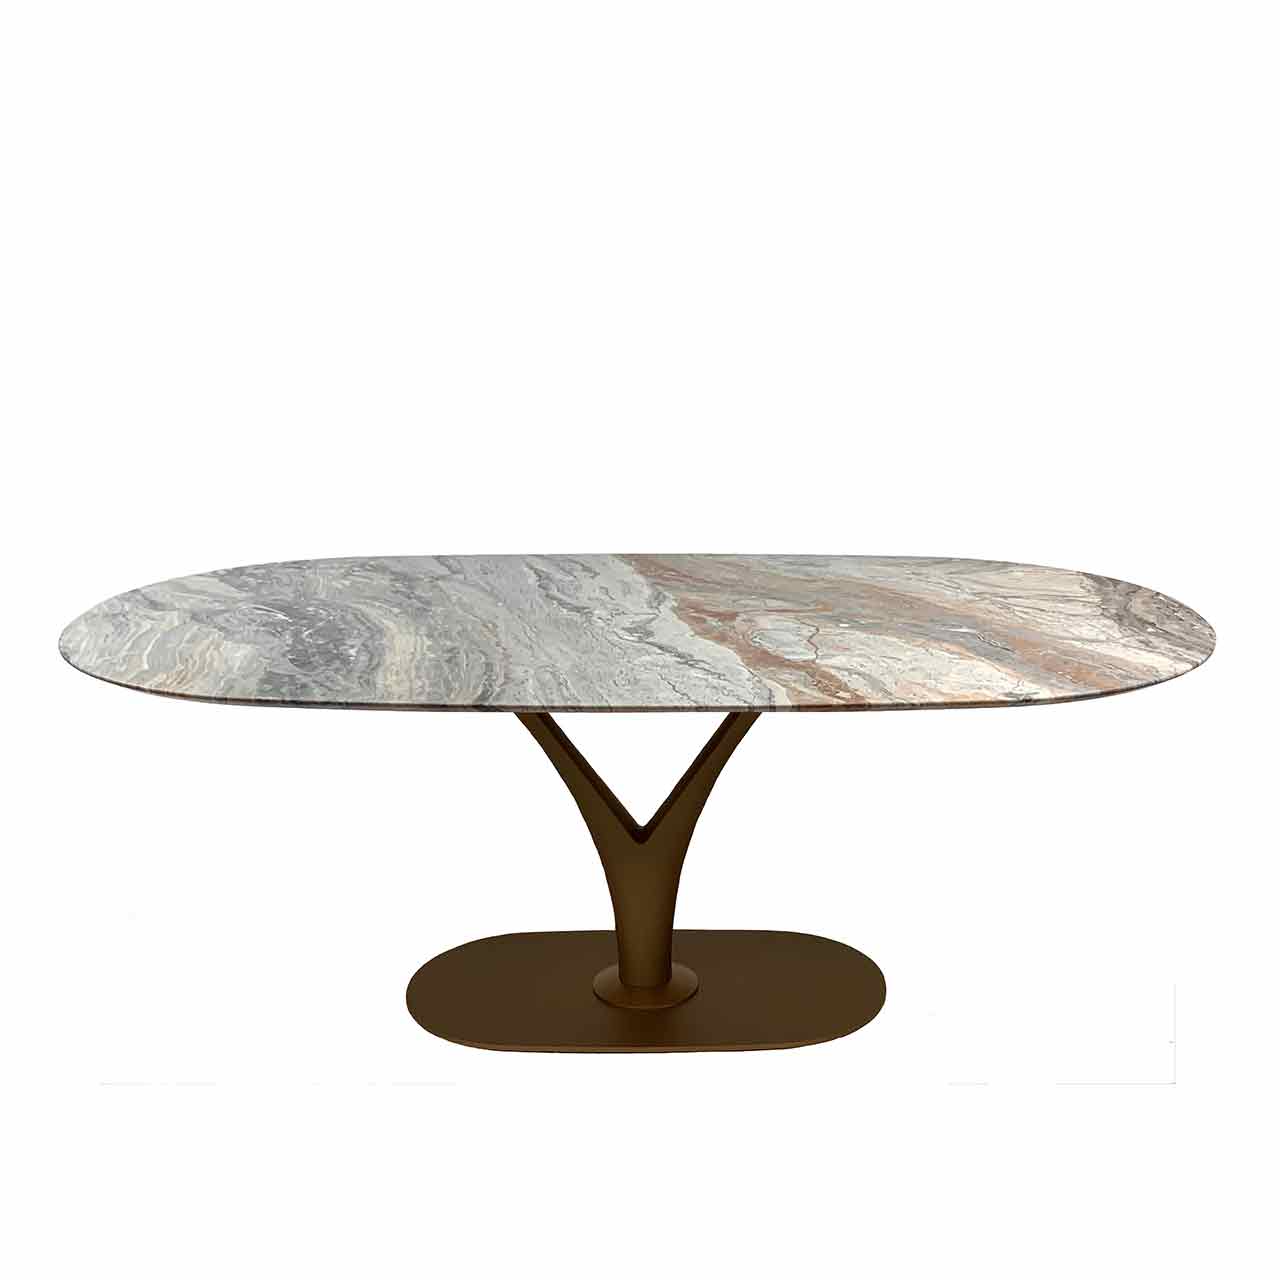 Ronald Schmitt – Esstisch Preistige | Tischplatte Marmor Arabescato Oroibco - Gestell Bronze